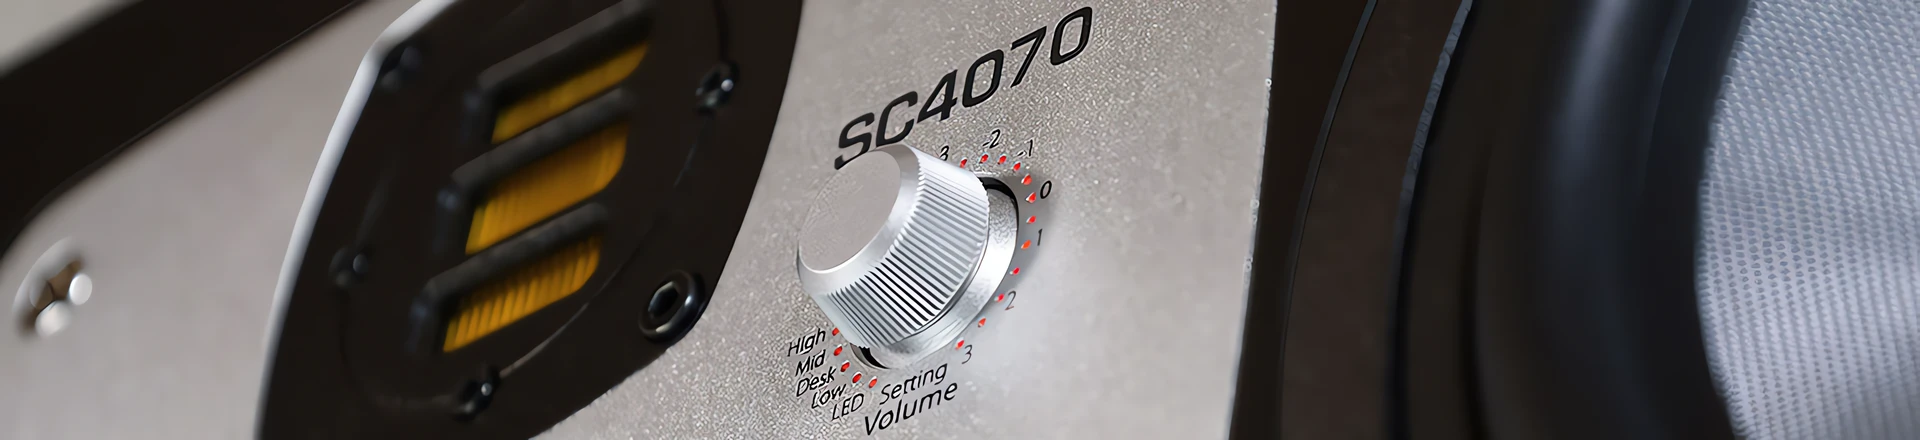 SC4070 - Nowe monitory odsłuchowe od EVE Audio